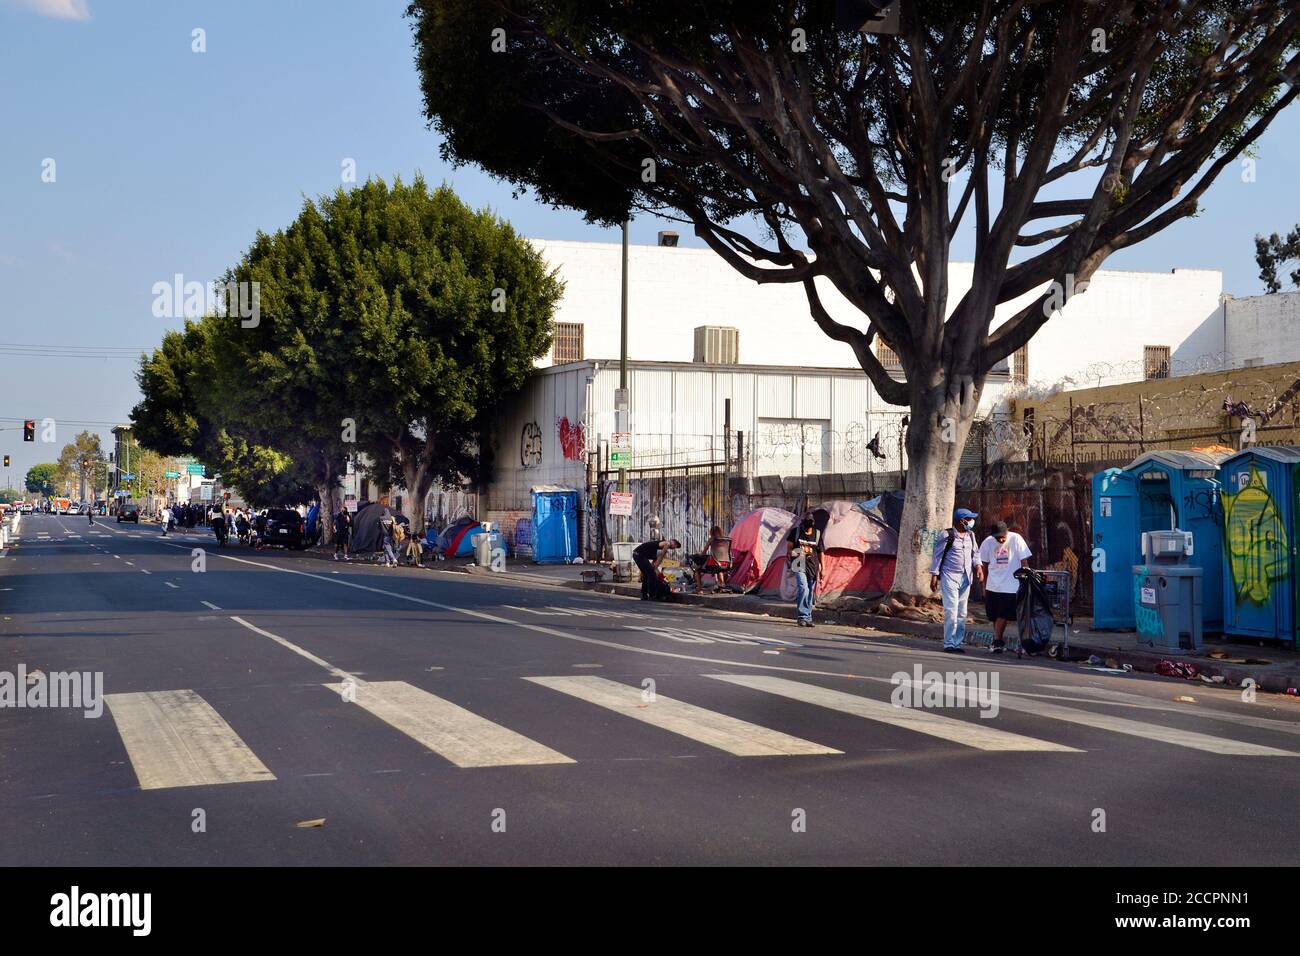 Los Angeles, CA, USA - 22. August 2020: Nicht identifizierte Obdachlose leben in Zelten und Notunterkünften auf der Straße in Zeiten der Covid 19 pande Stockfoto